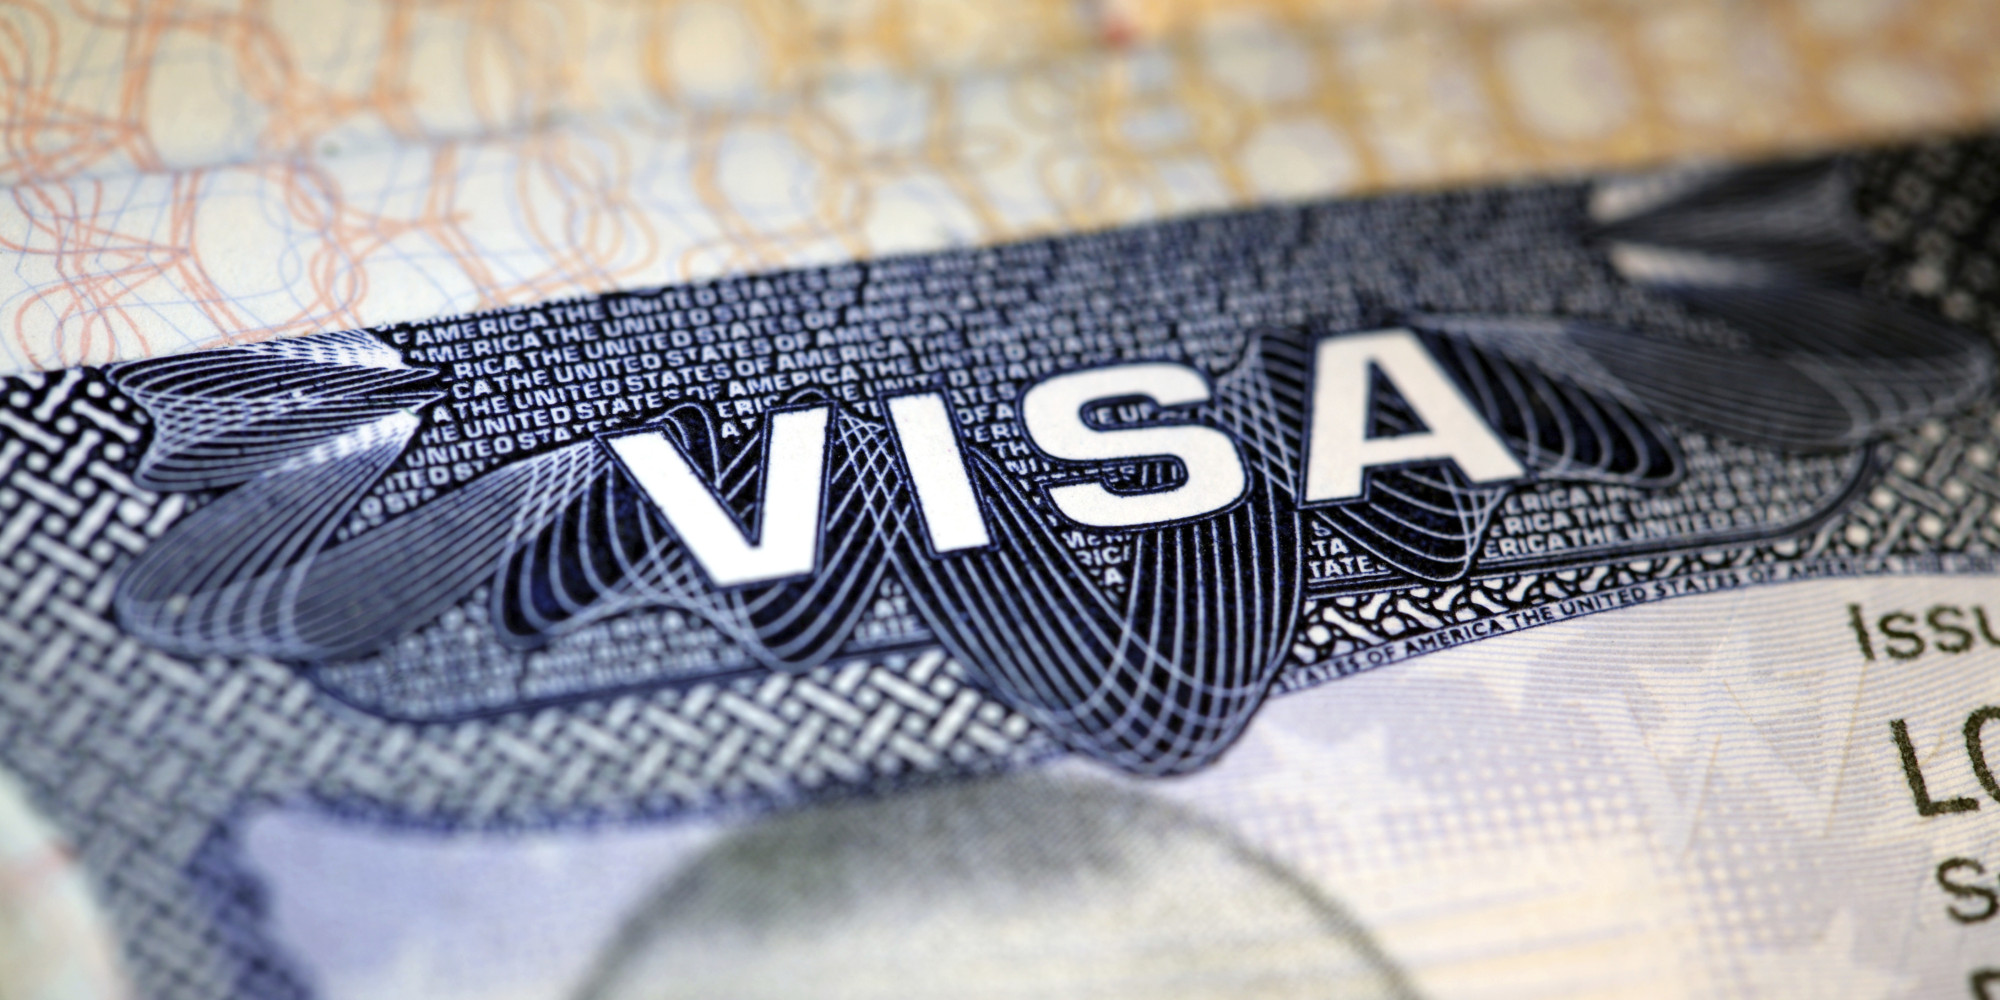   فحص الخلفية الشخصية و علاقاتك بأصدقائك ضمن إجراءات الحصول على تأشيرة دخول أمريكا